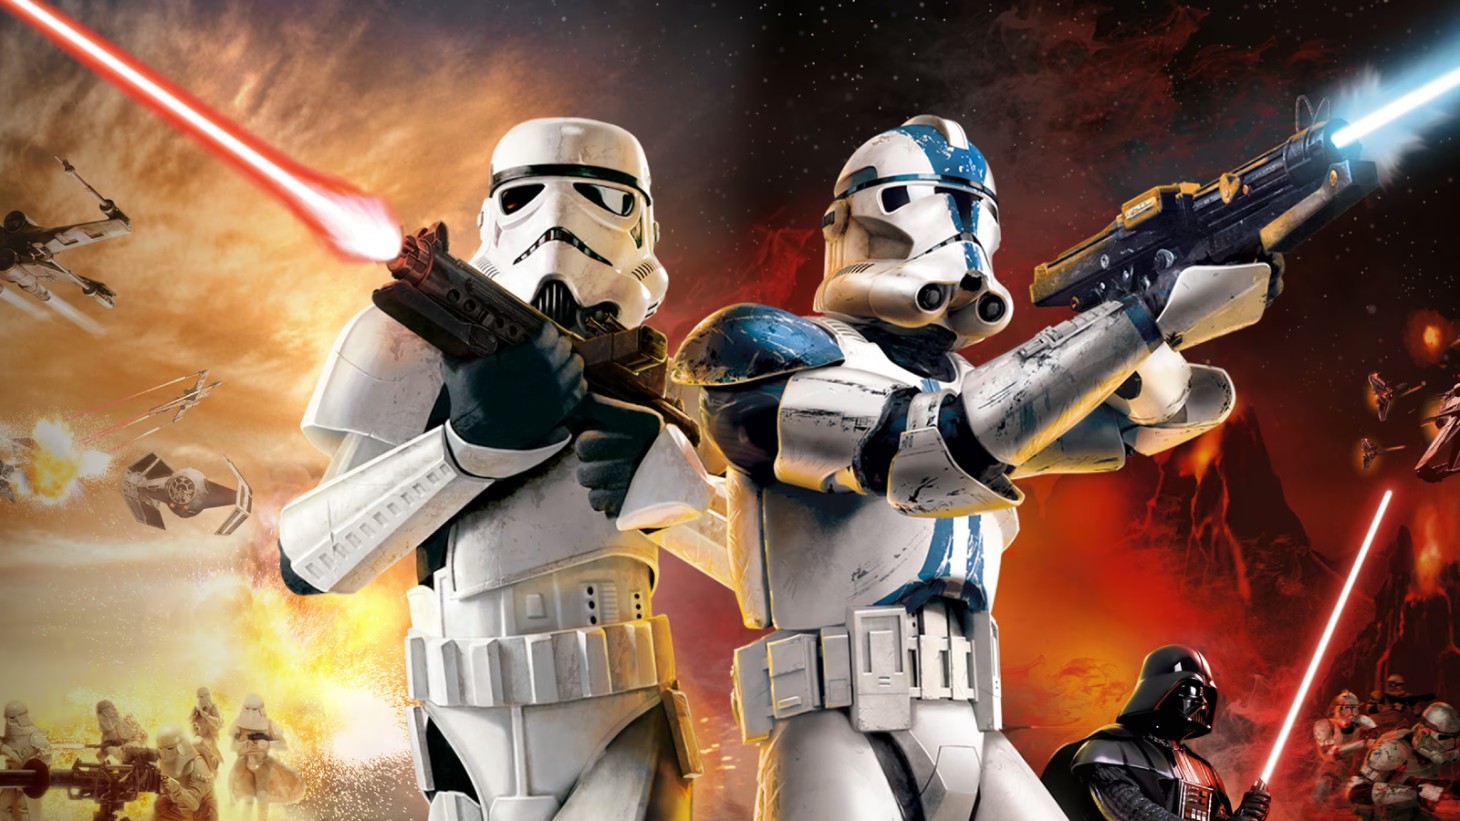 Die Star Wars: Battlefront Classic Collection steht auf dem PC unter einem schlechten Stern